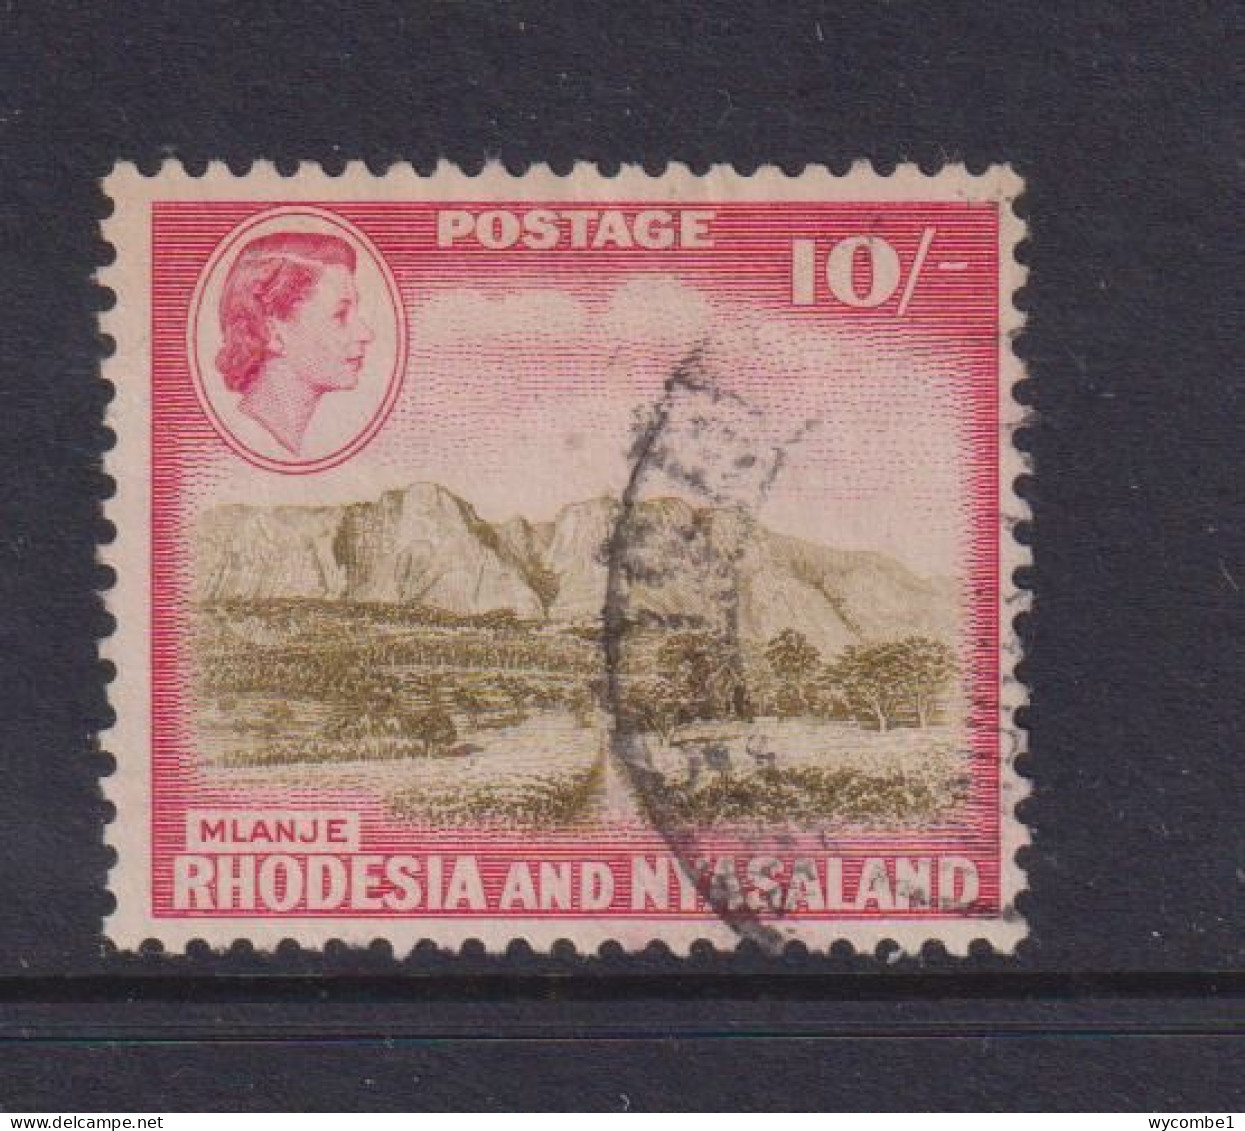 RHODESIA  AND NYASALAND - 1959 Definitive 10s  Used As Scan - Rhodesia & Nyasaland (1954-1963)